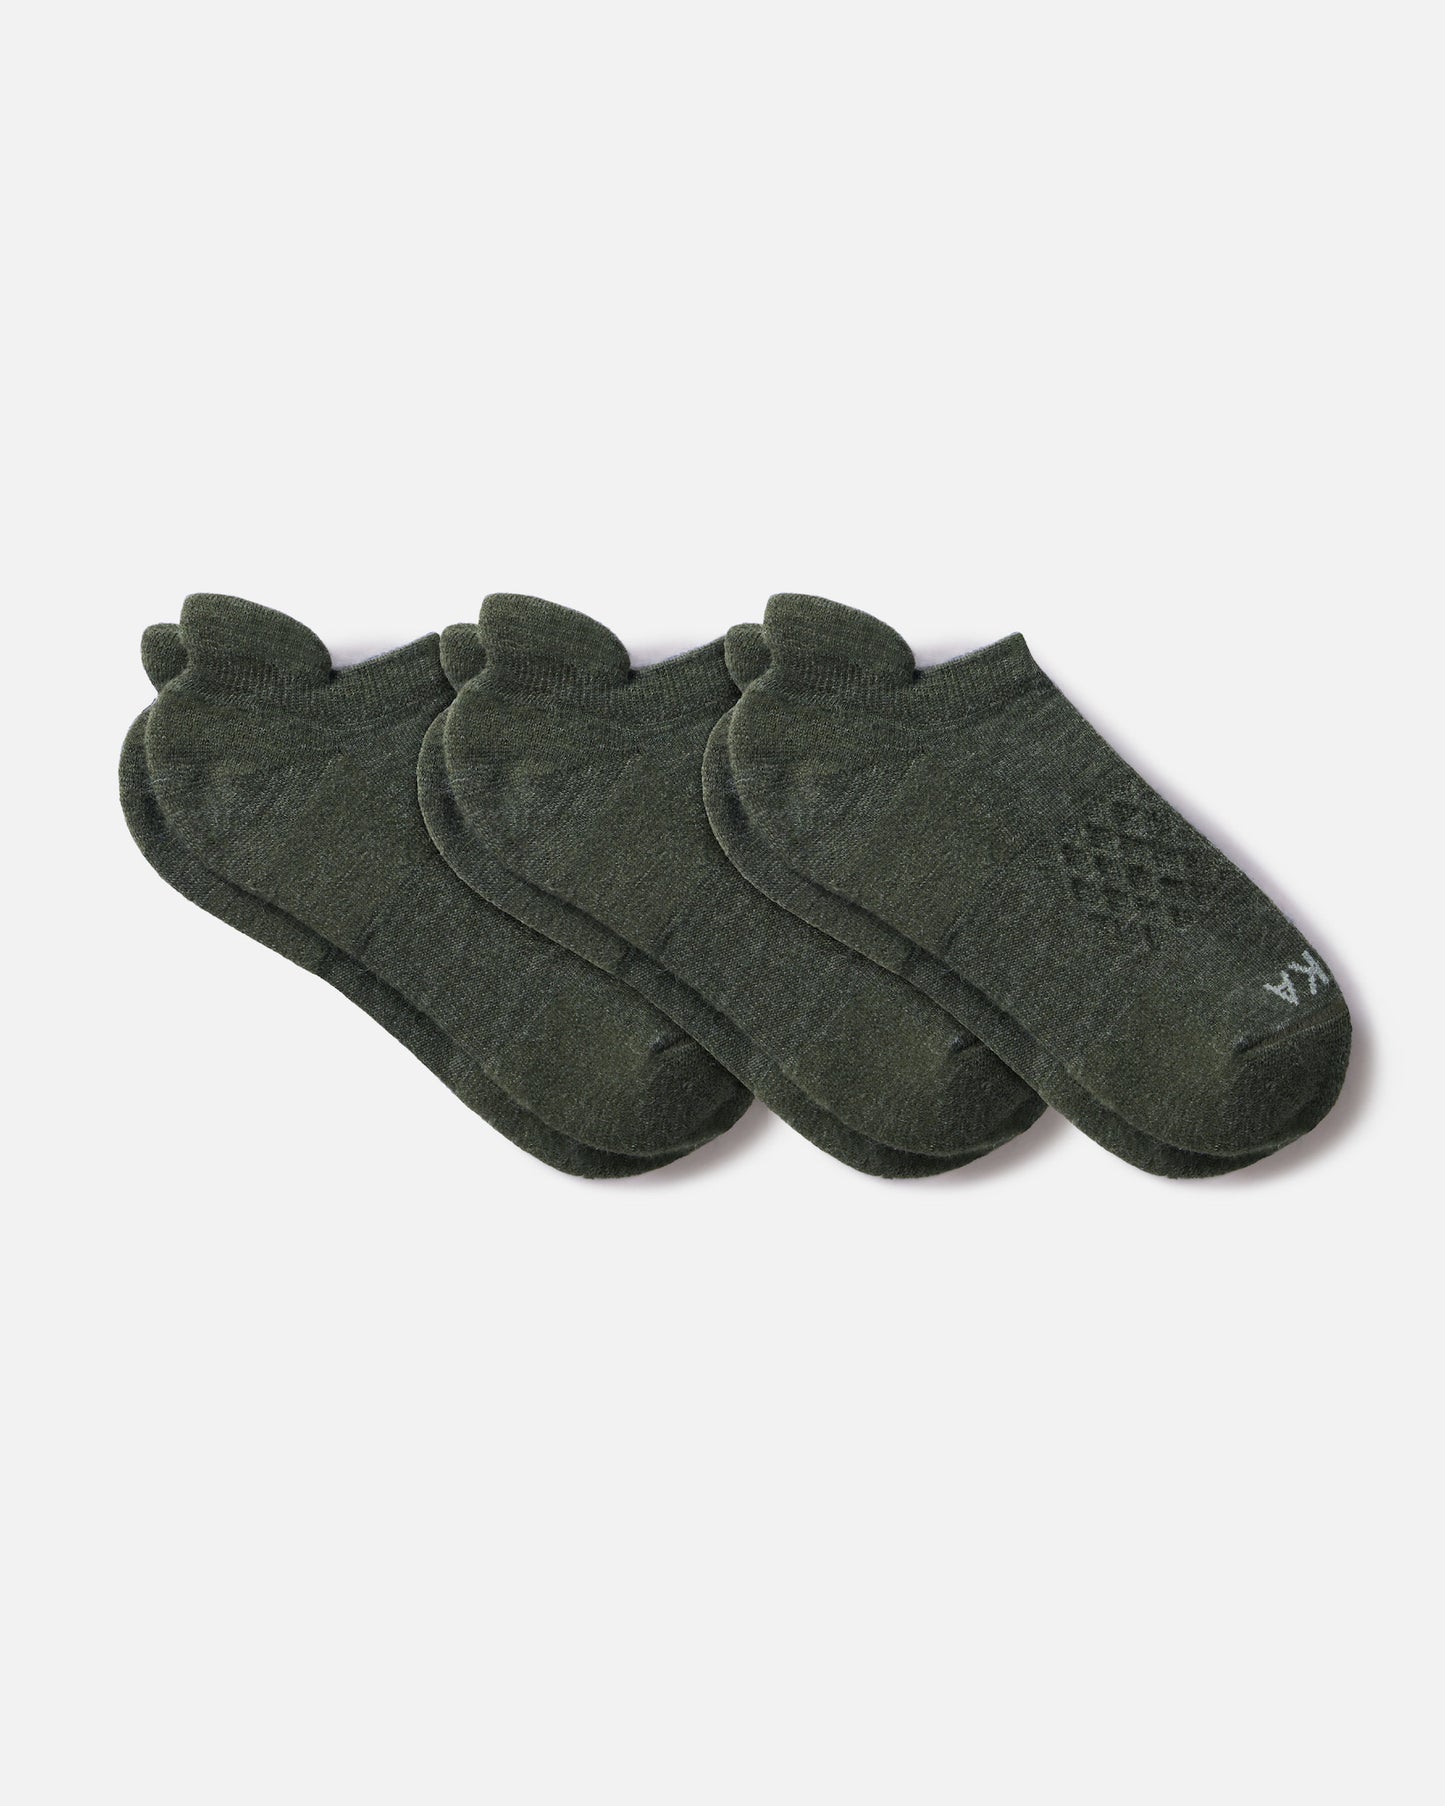 3 pairs of green color alpaca wool ankle socks